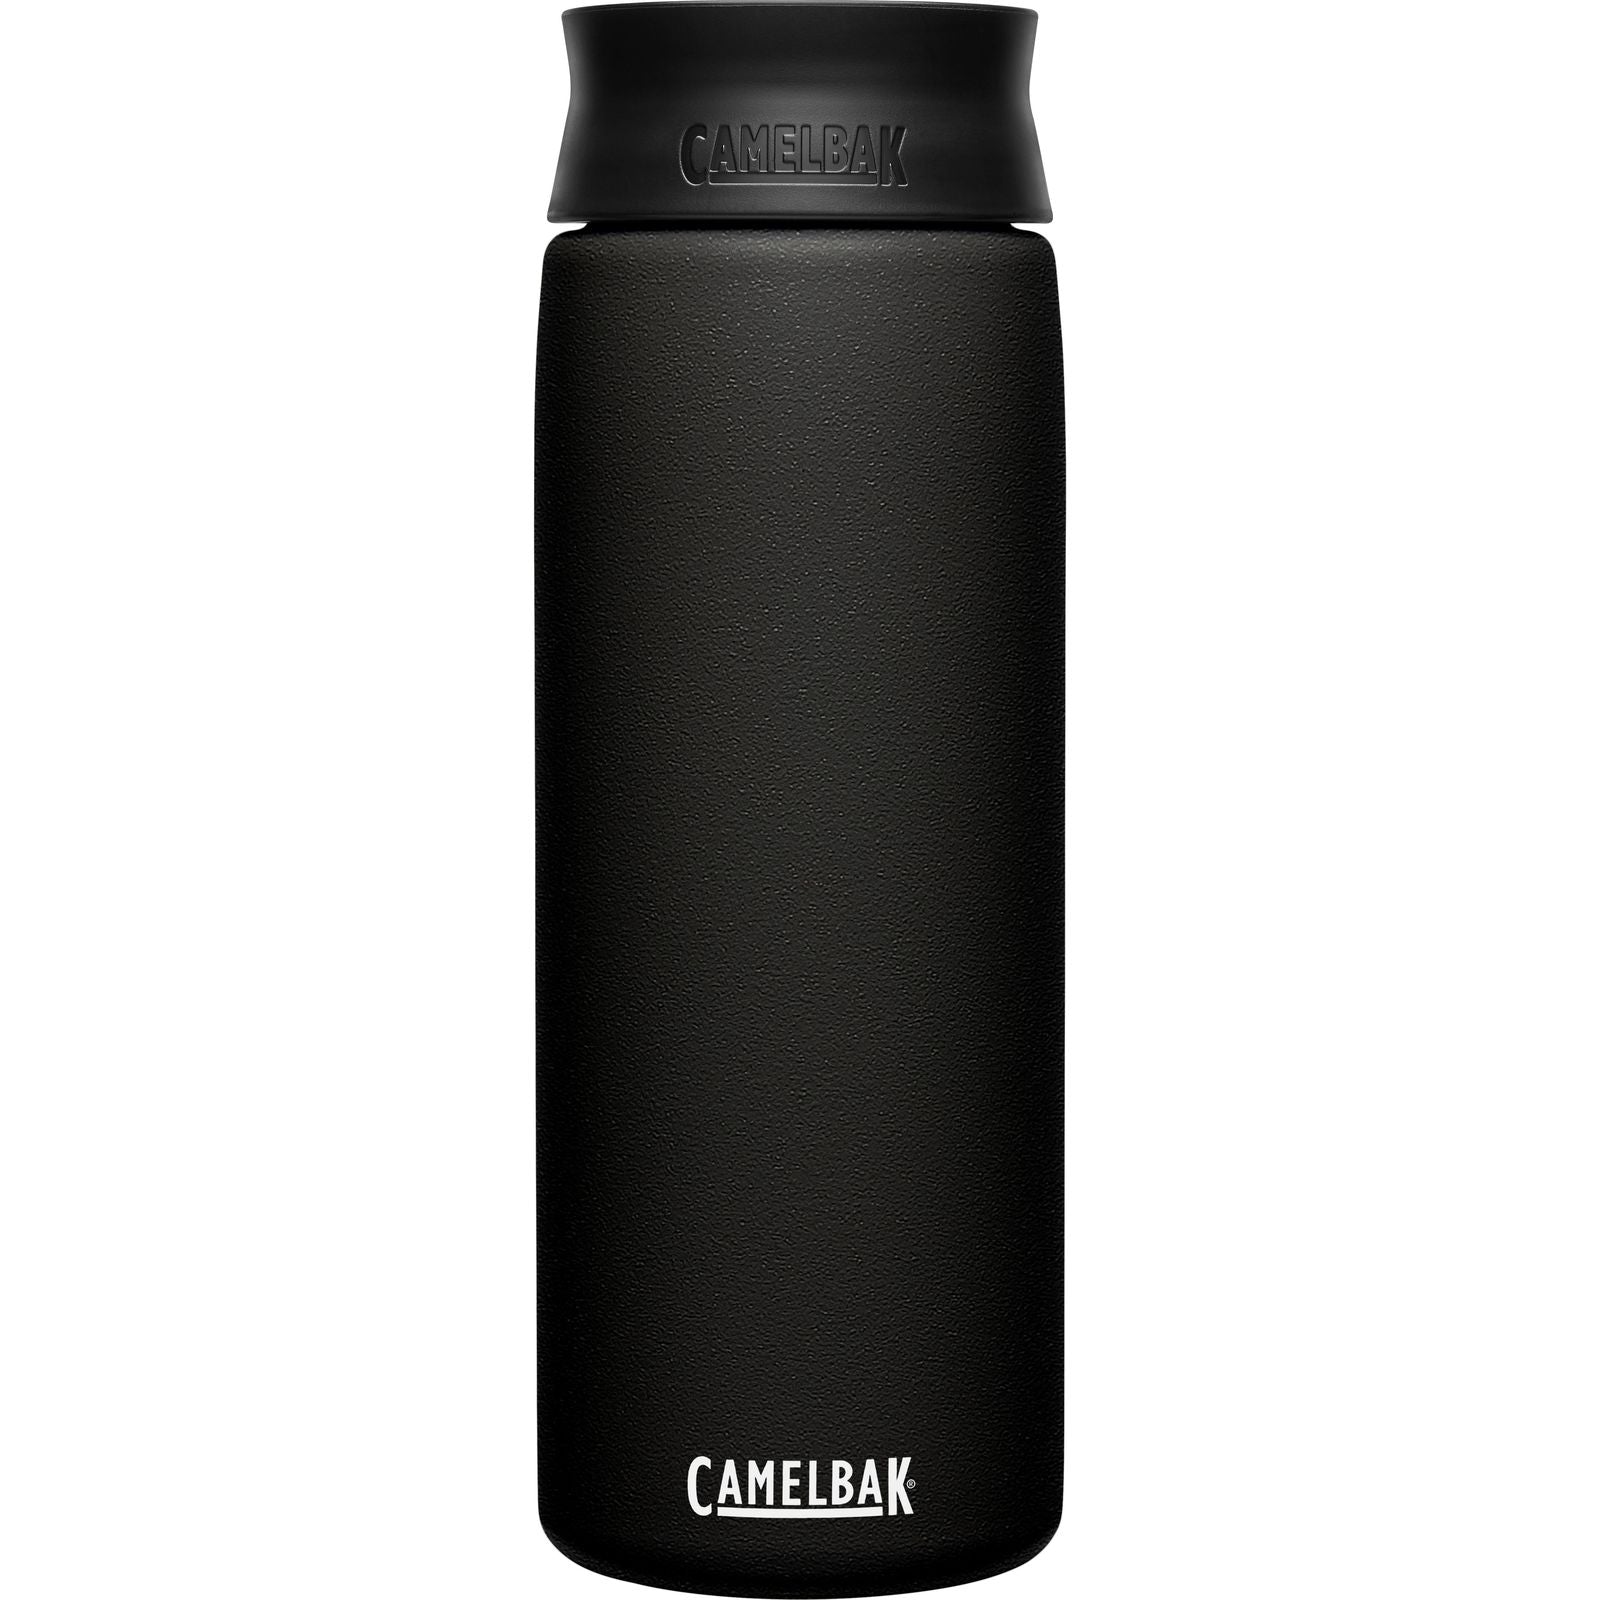 CamelBak Hot Cap SST Vacuum Insulated Bottle Black 20oz Water Bottles & Hydration Packs